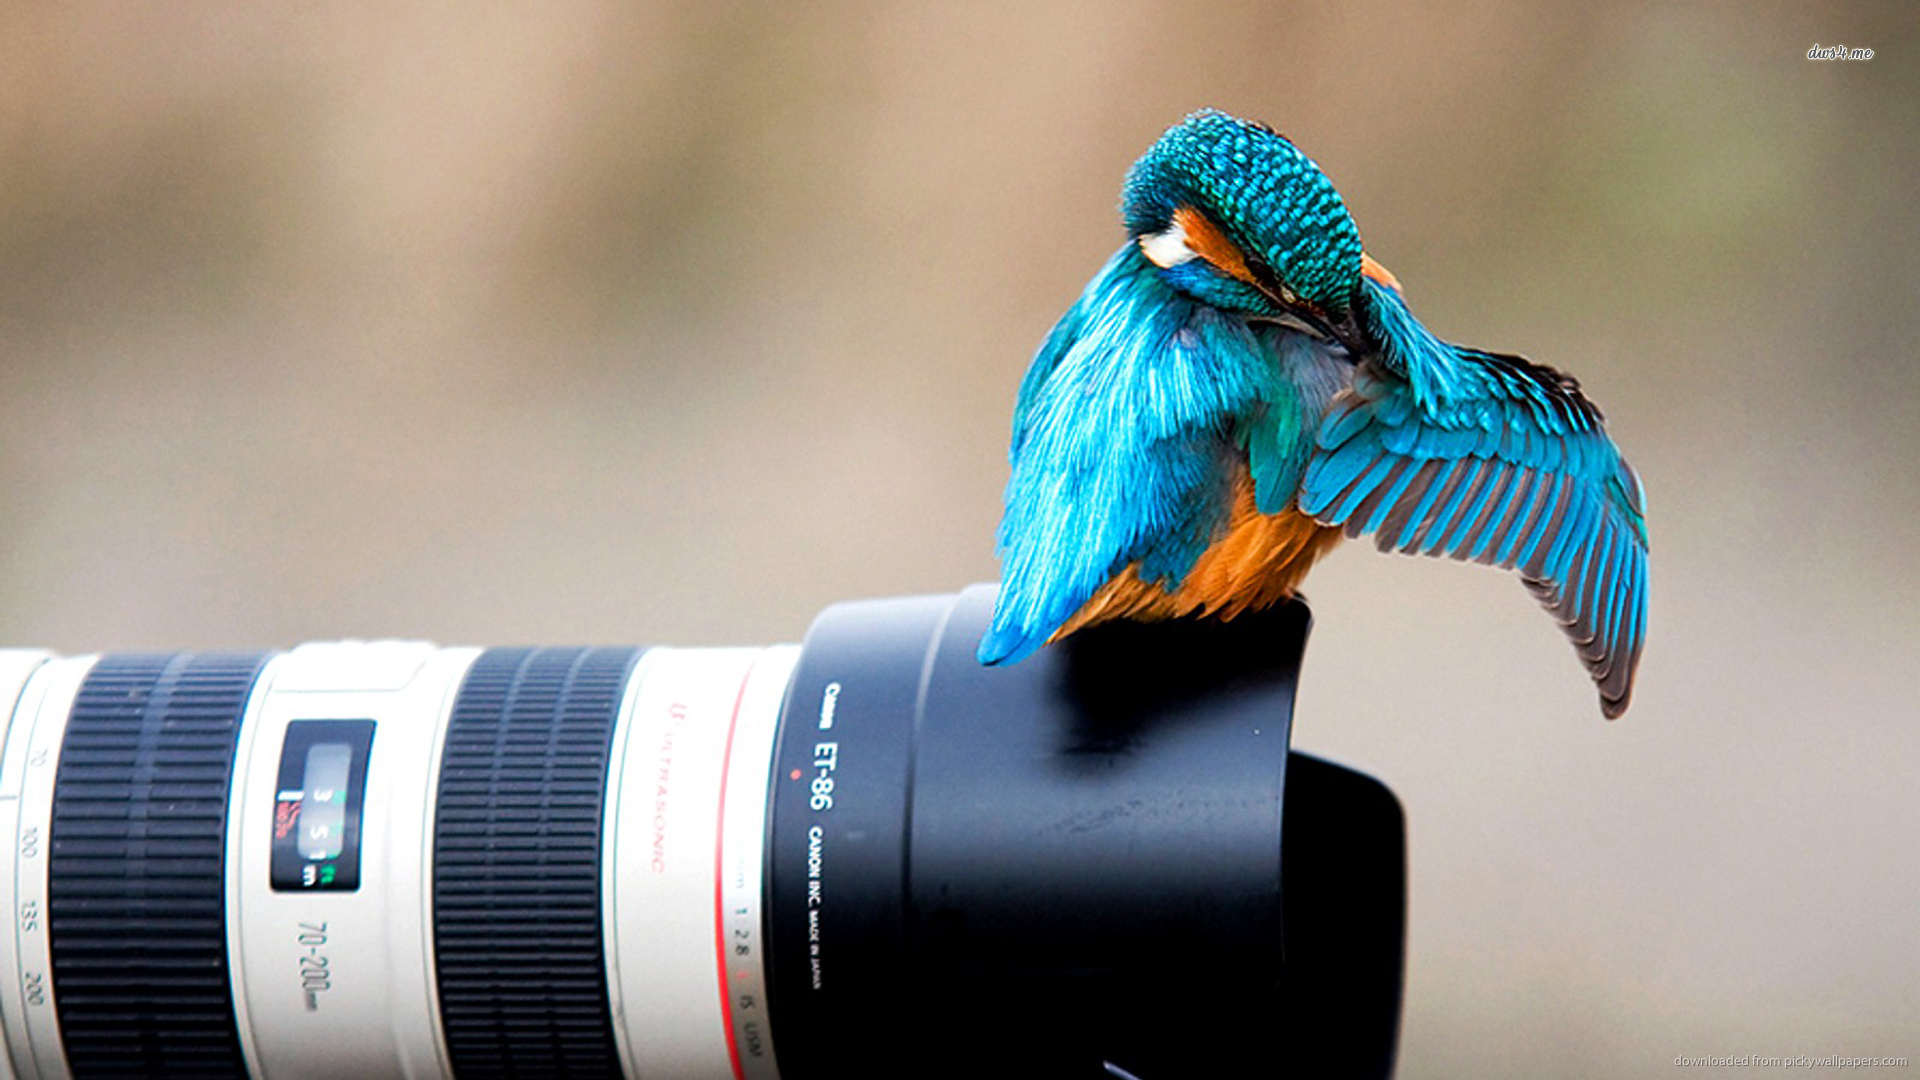 mejores fondos de pantalla de fotografía,pájaro,fotografía,pájaro posado